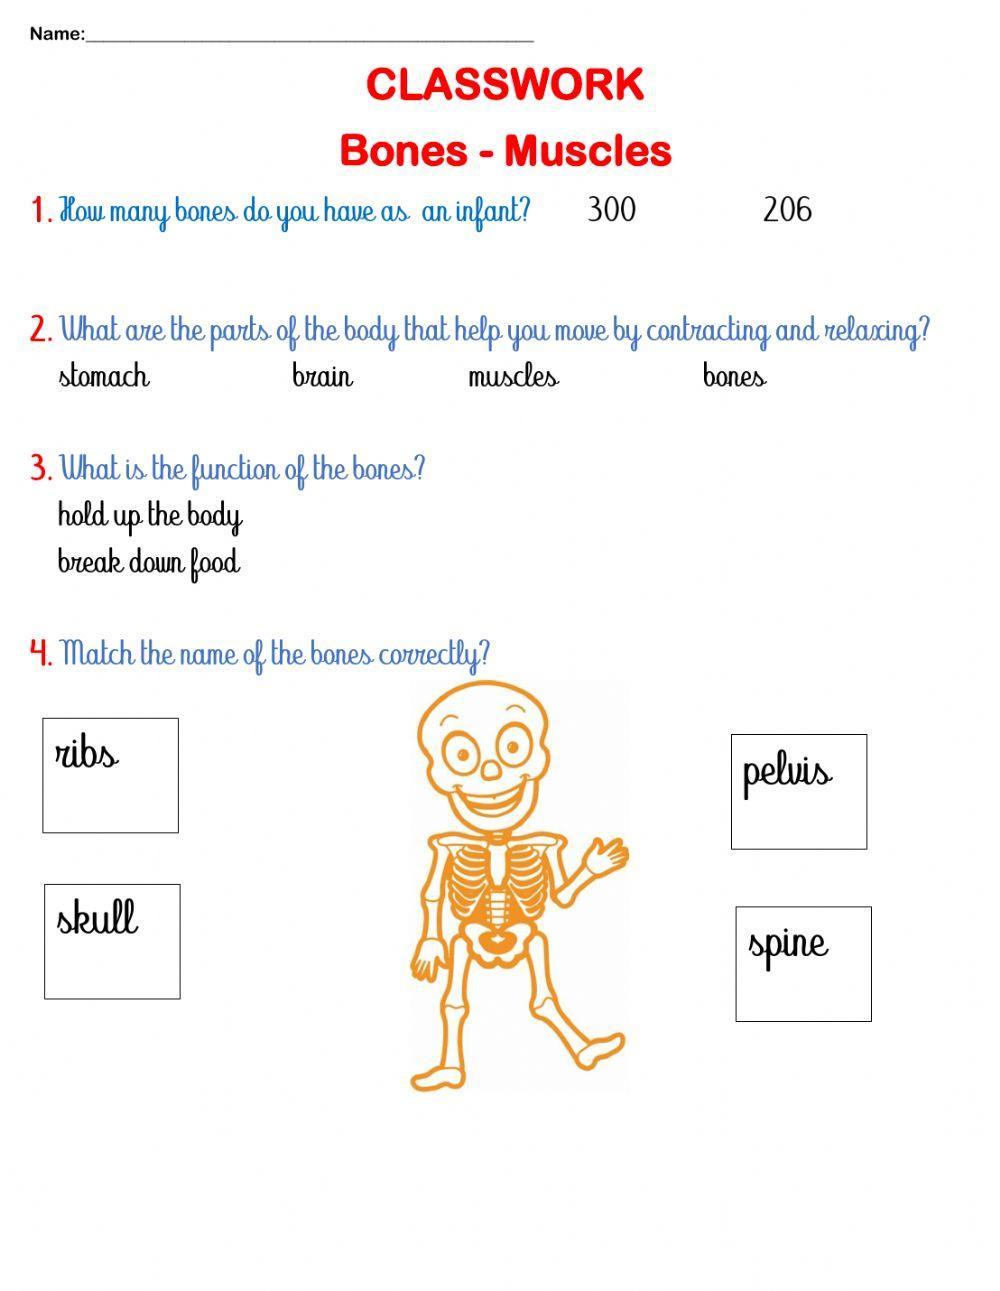 Bones and Muscles CLASSWORK